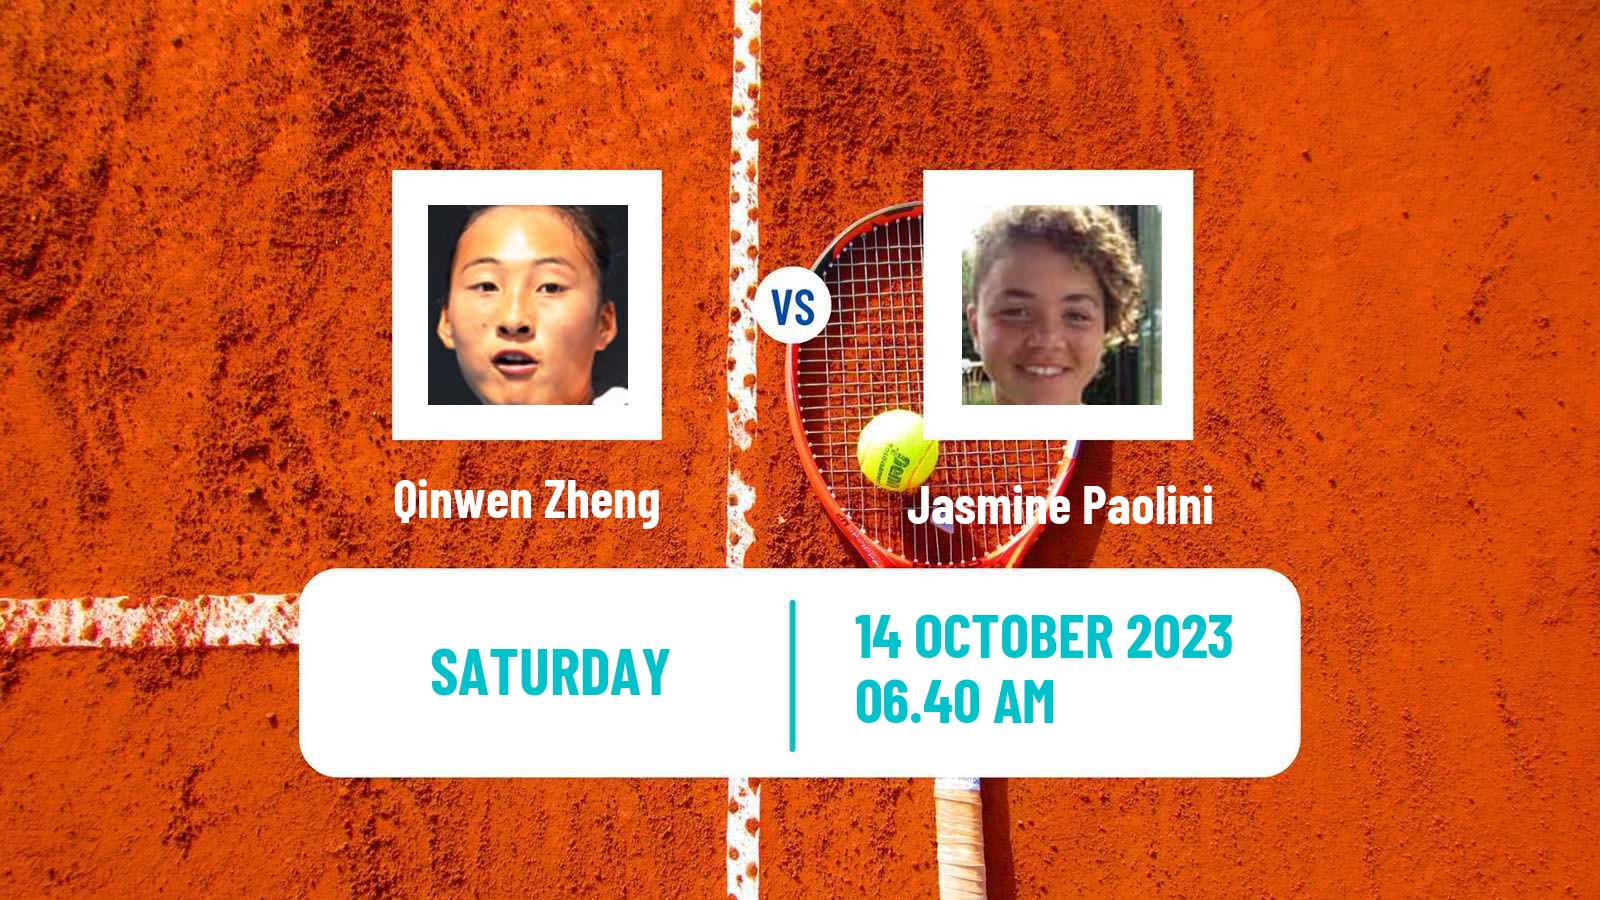 Tennis WTA Zhengzhou Qinwen Zheng - Jasmine Paolini